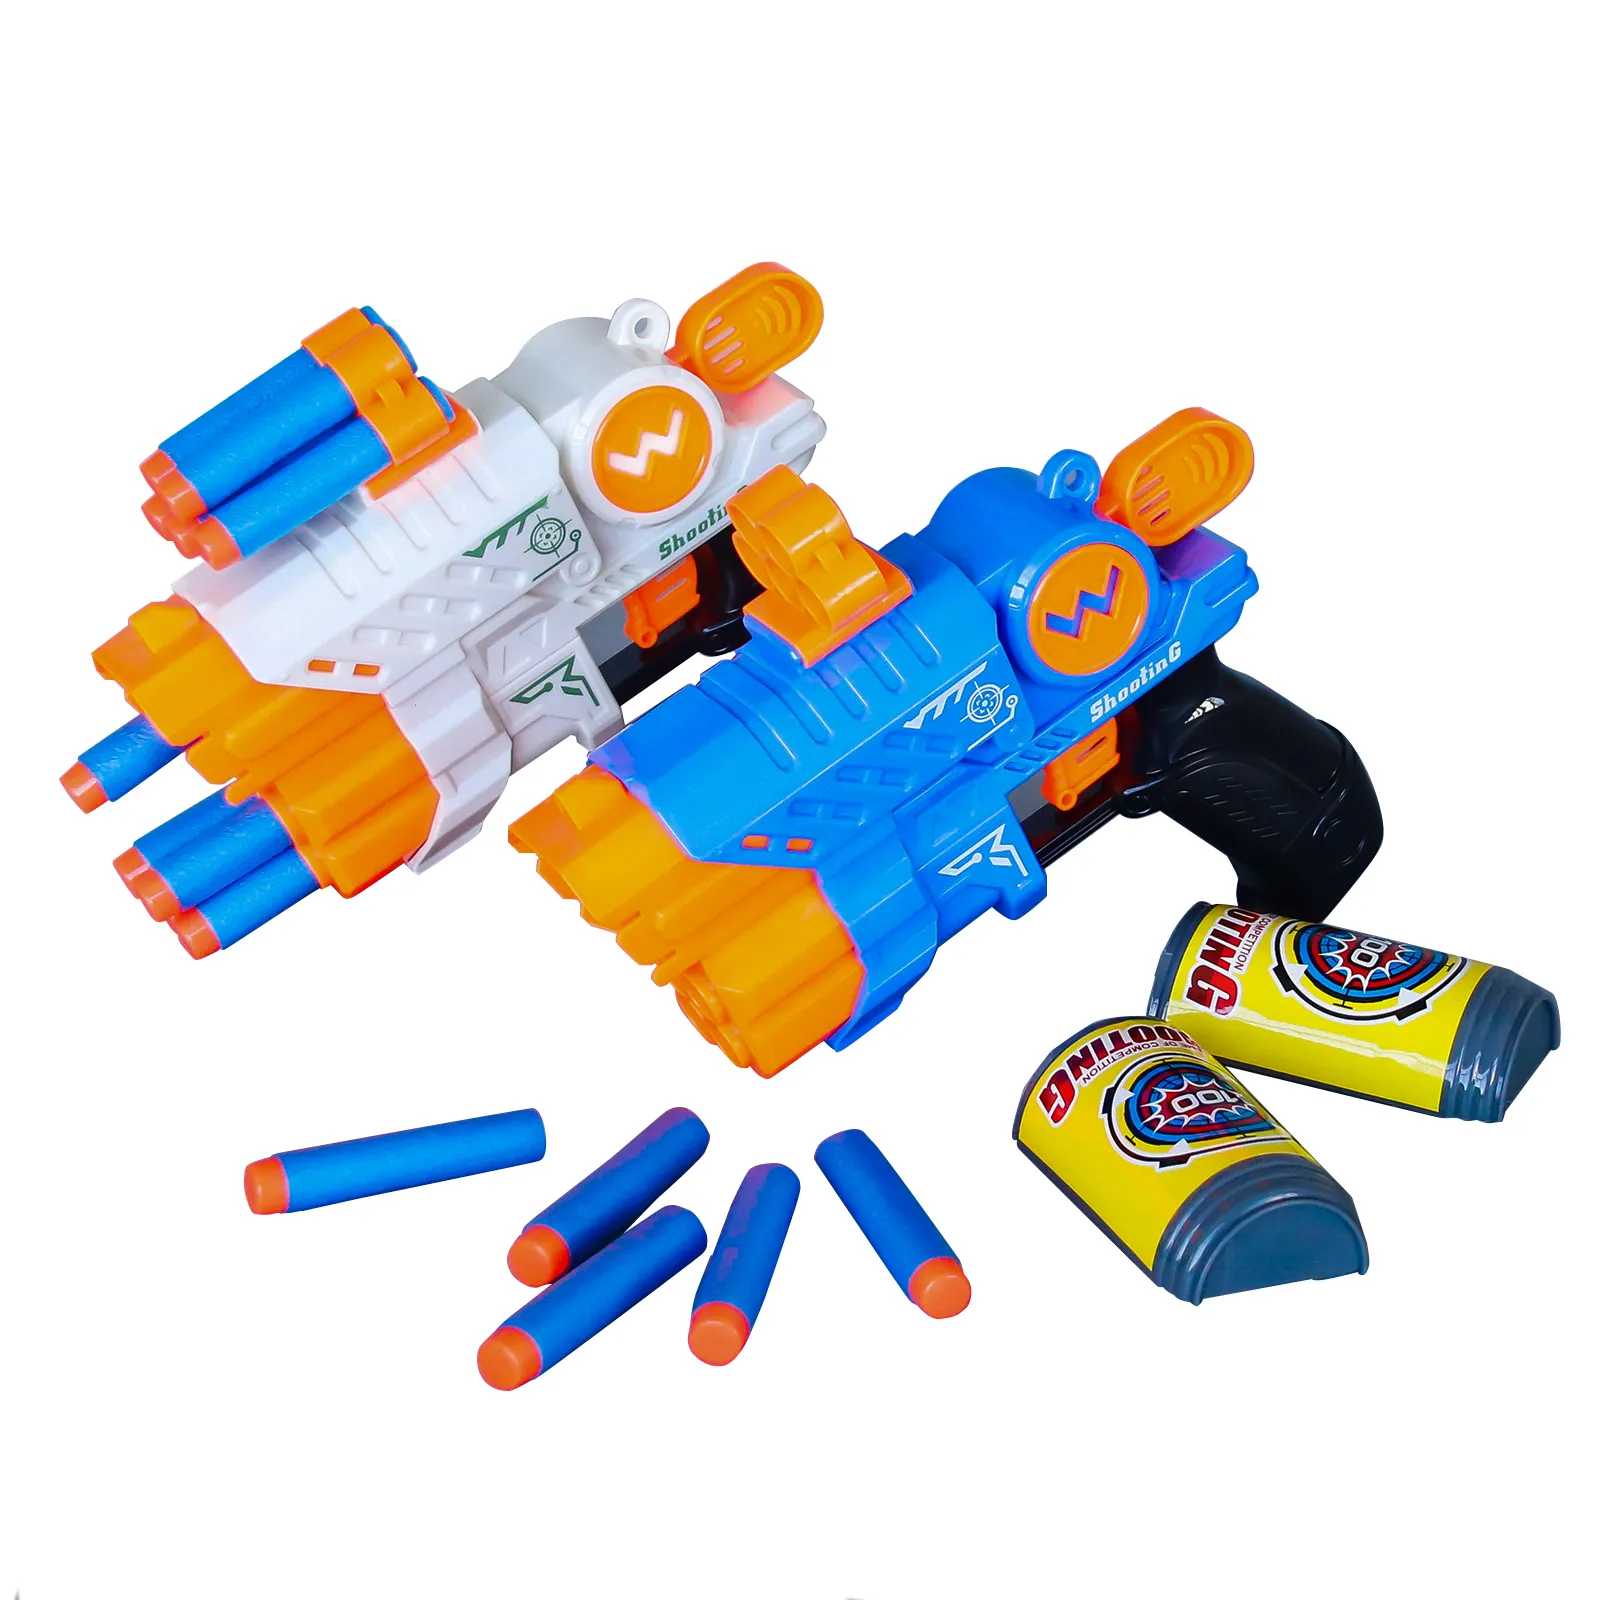 Kampfspiel Cartoon Soft Bullet Gun Spielzeug Ziels chießen Gaming EVA Bullet Boys Spielzeug Air Sniper Guns Toy For Kids